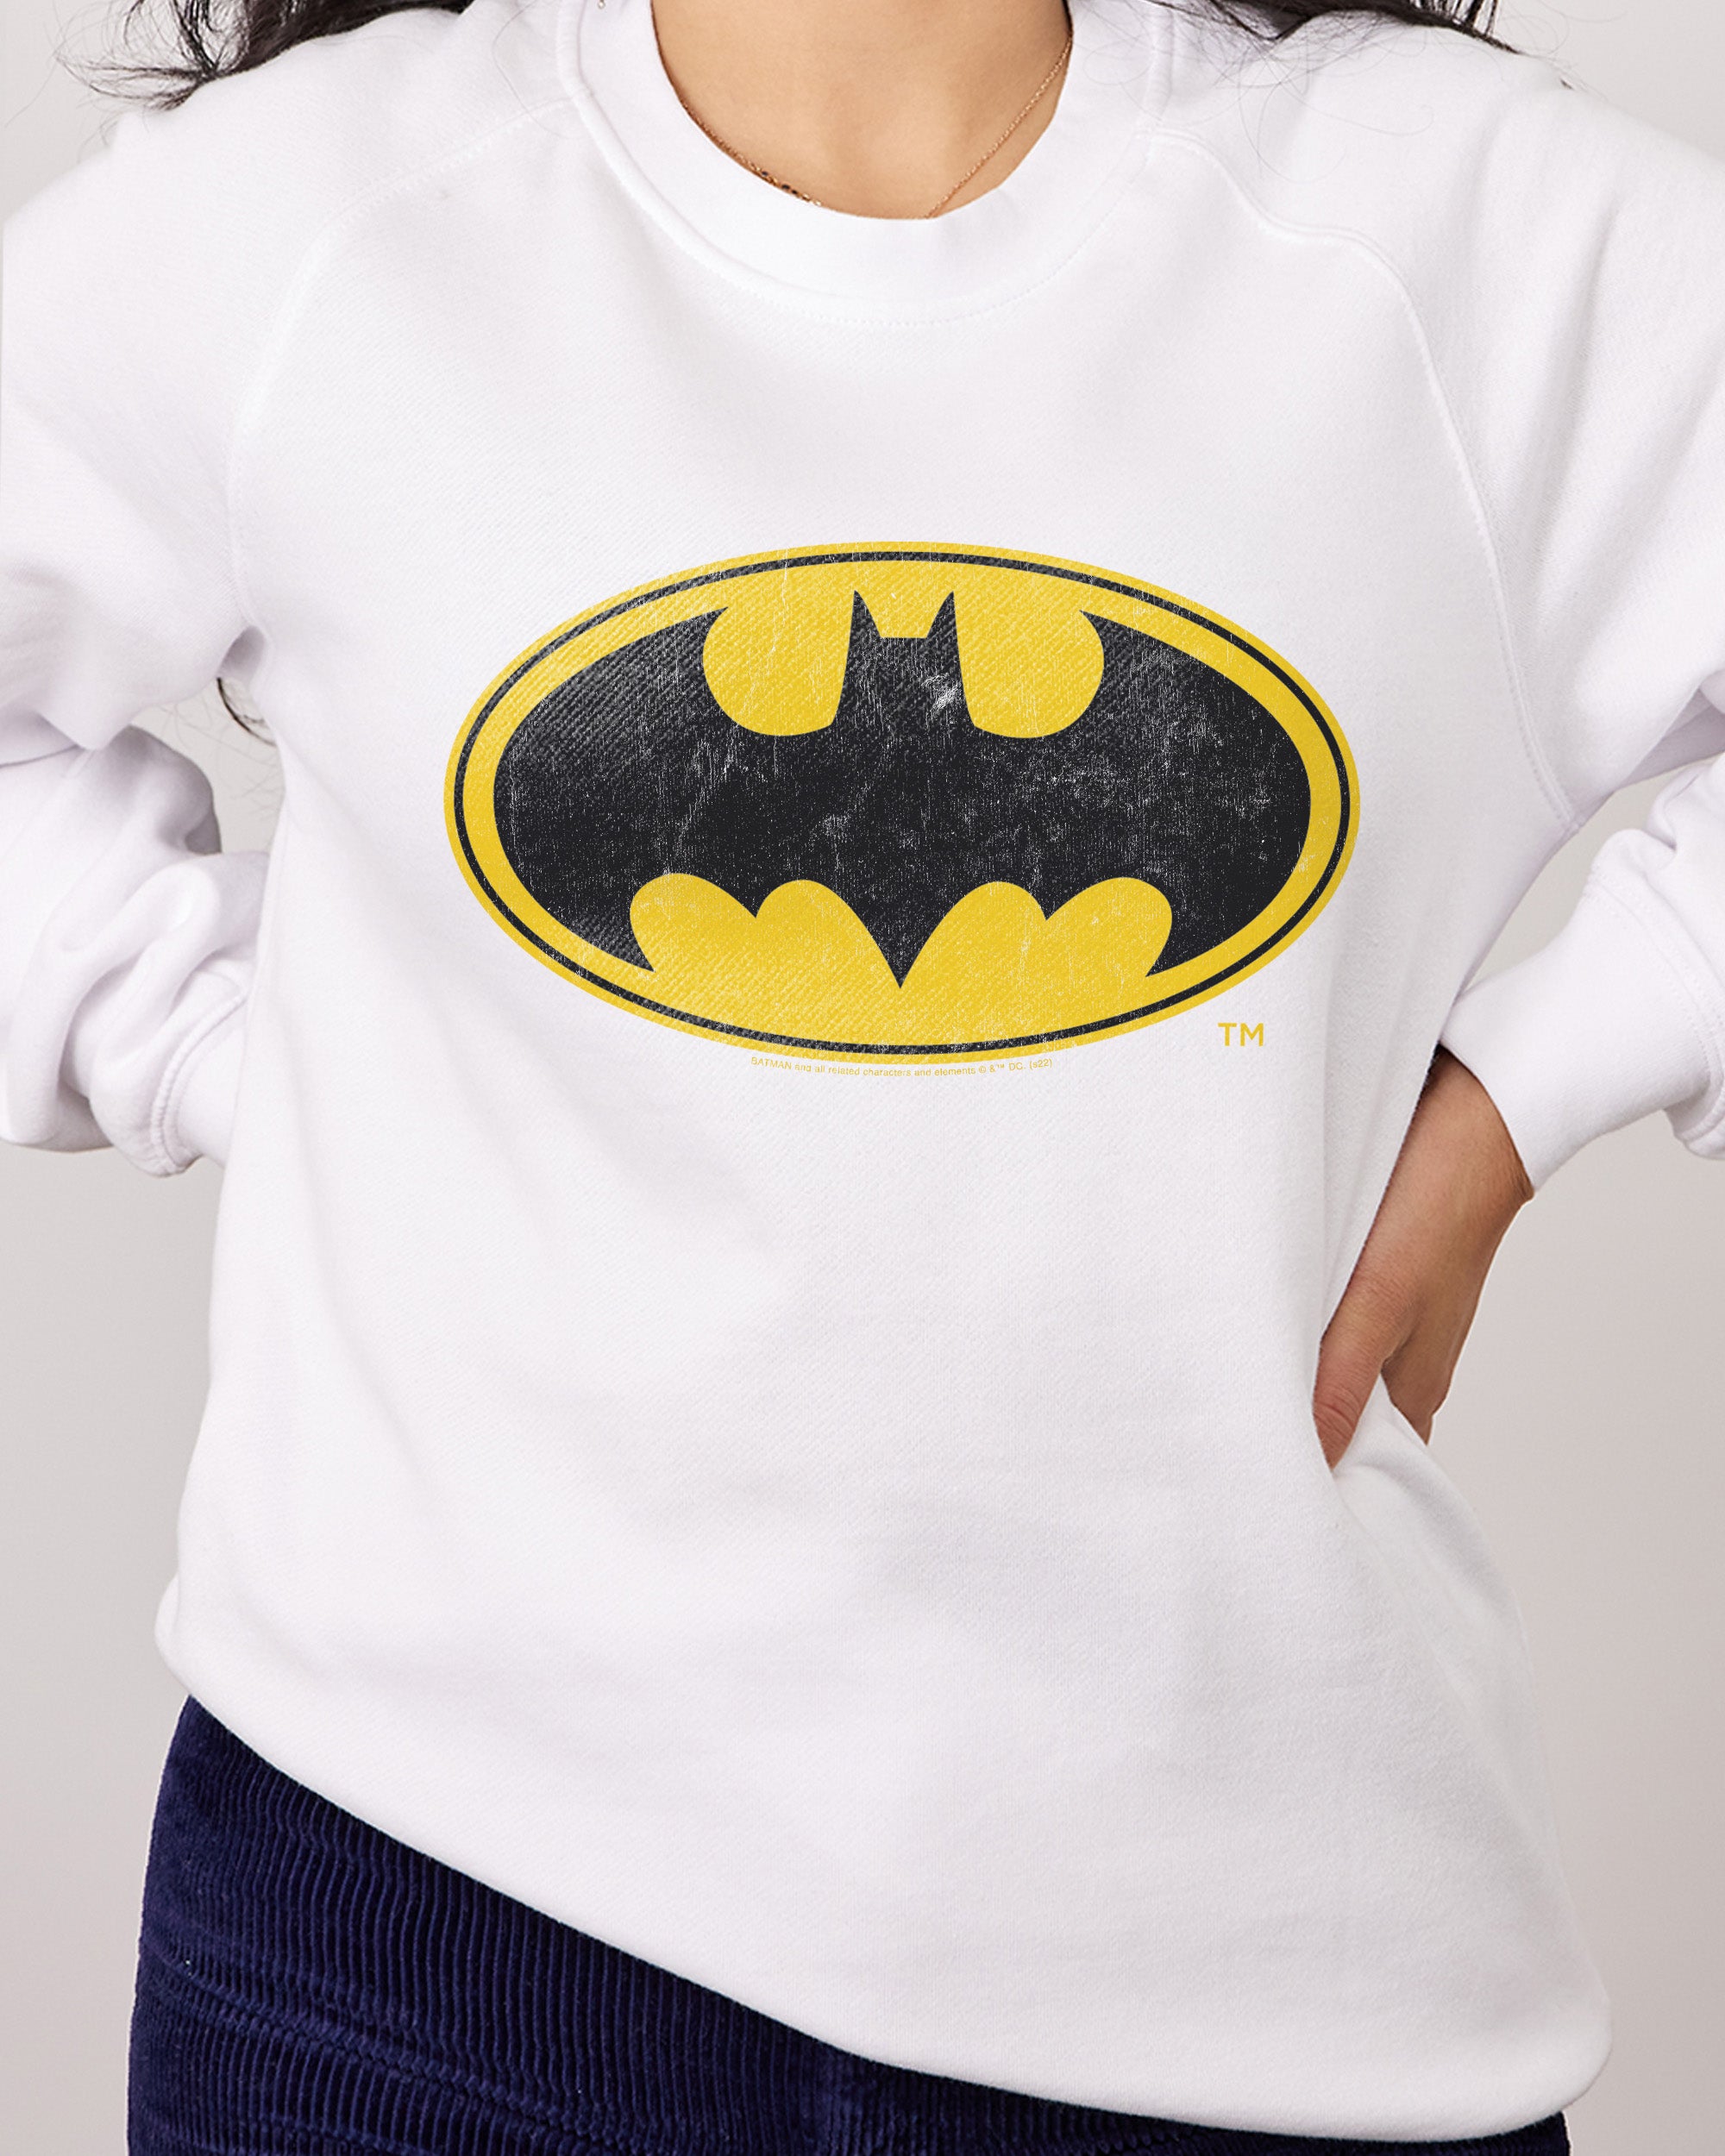 Batman Classic Logo Sweater Australia Online